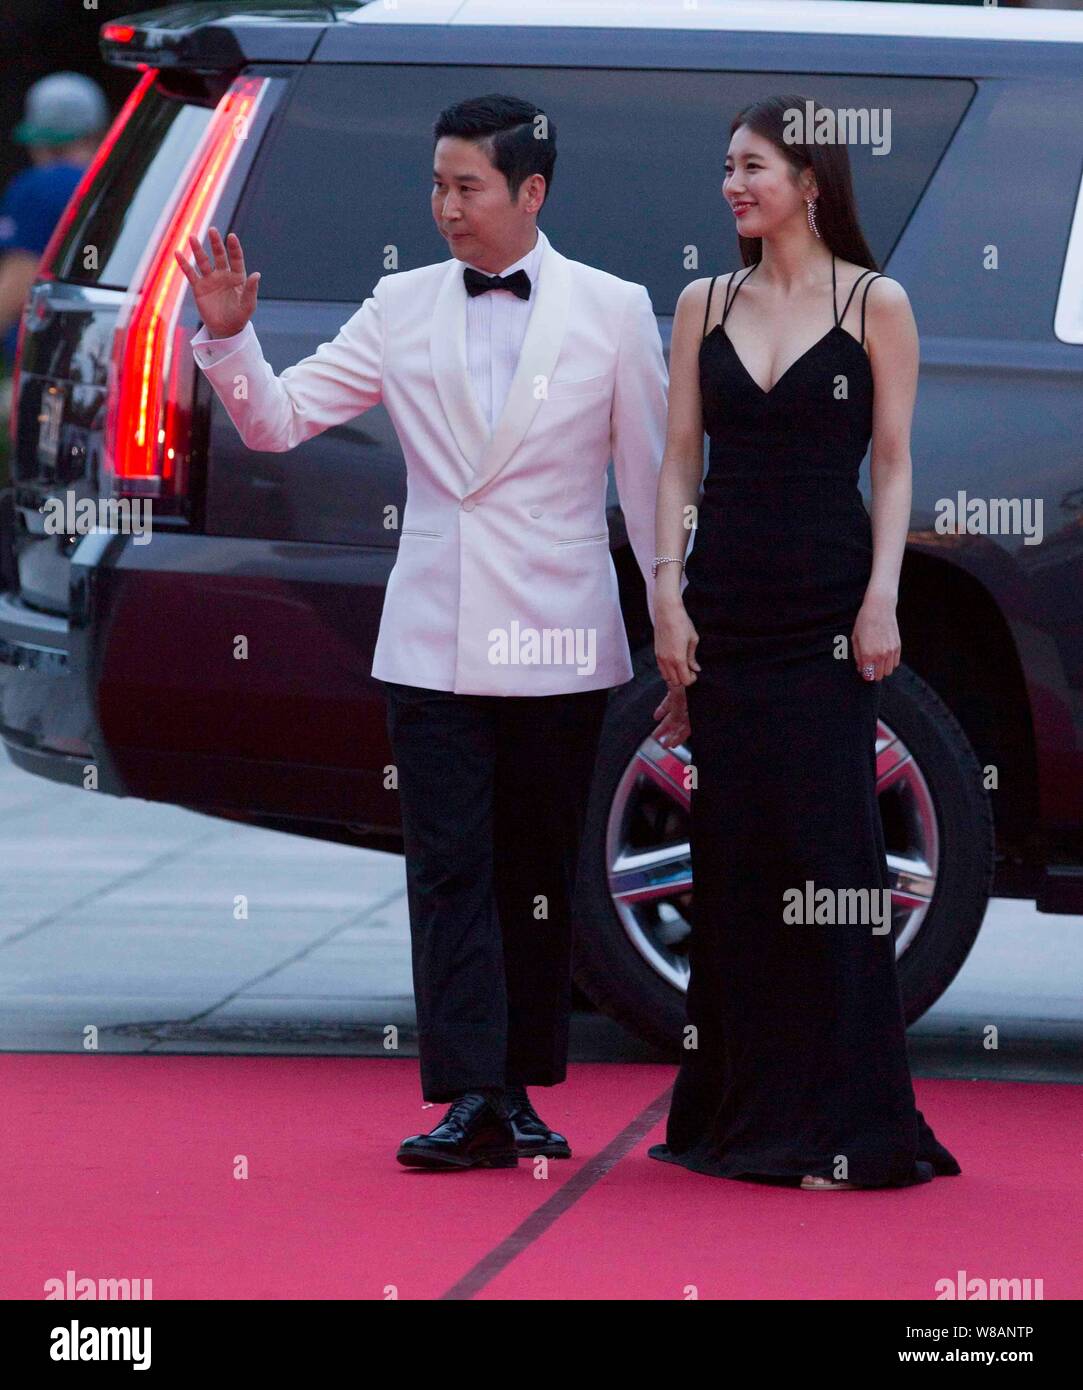 Koreanische Schauspielerin Bae Su-ji, rechts, Schauspieler und TV-Moderator Shin Dong-yup auf dem roten Teppich für die 52 Paeksang Arts Awards ankommen, auch bekannt als Th Stockfoto